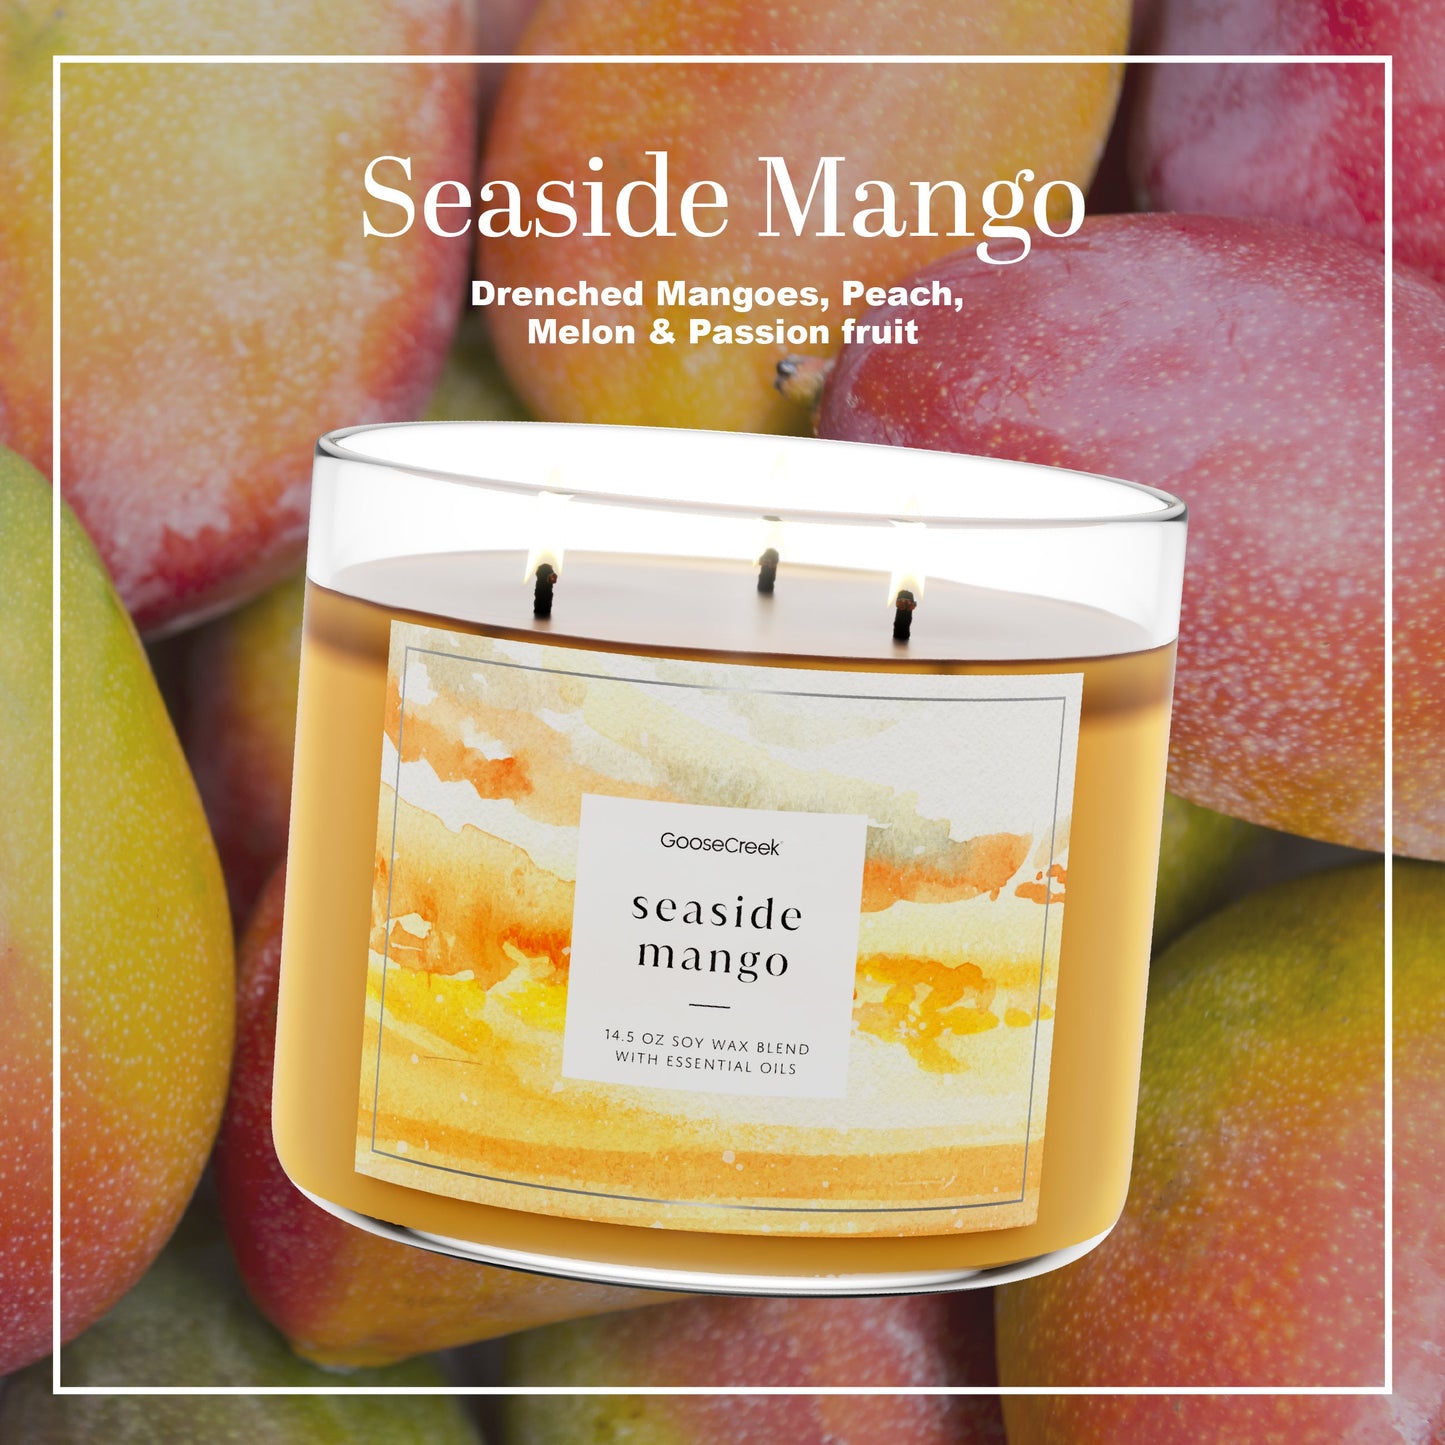 Seaside Mango Large 3-Wick Candle